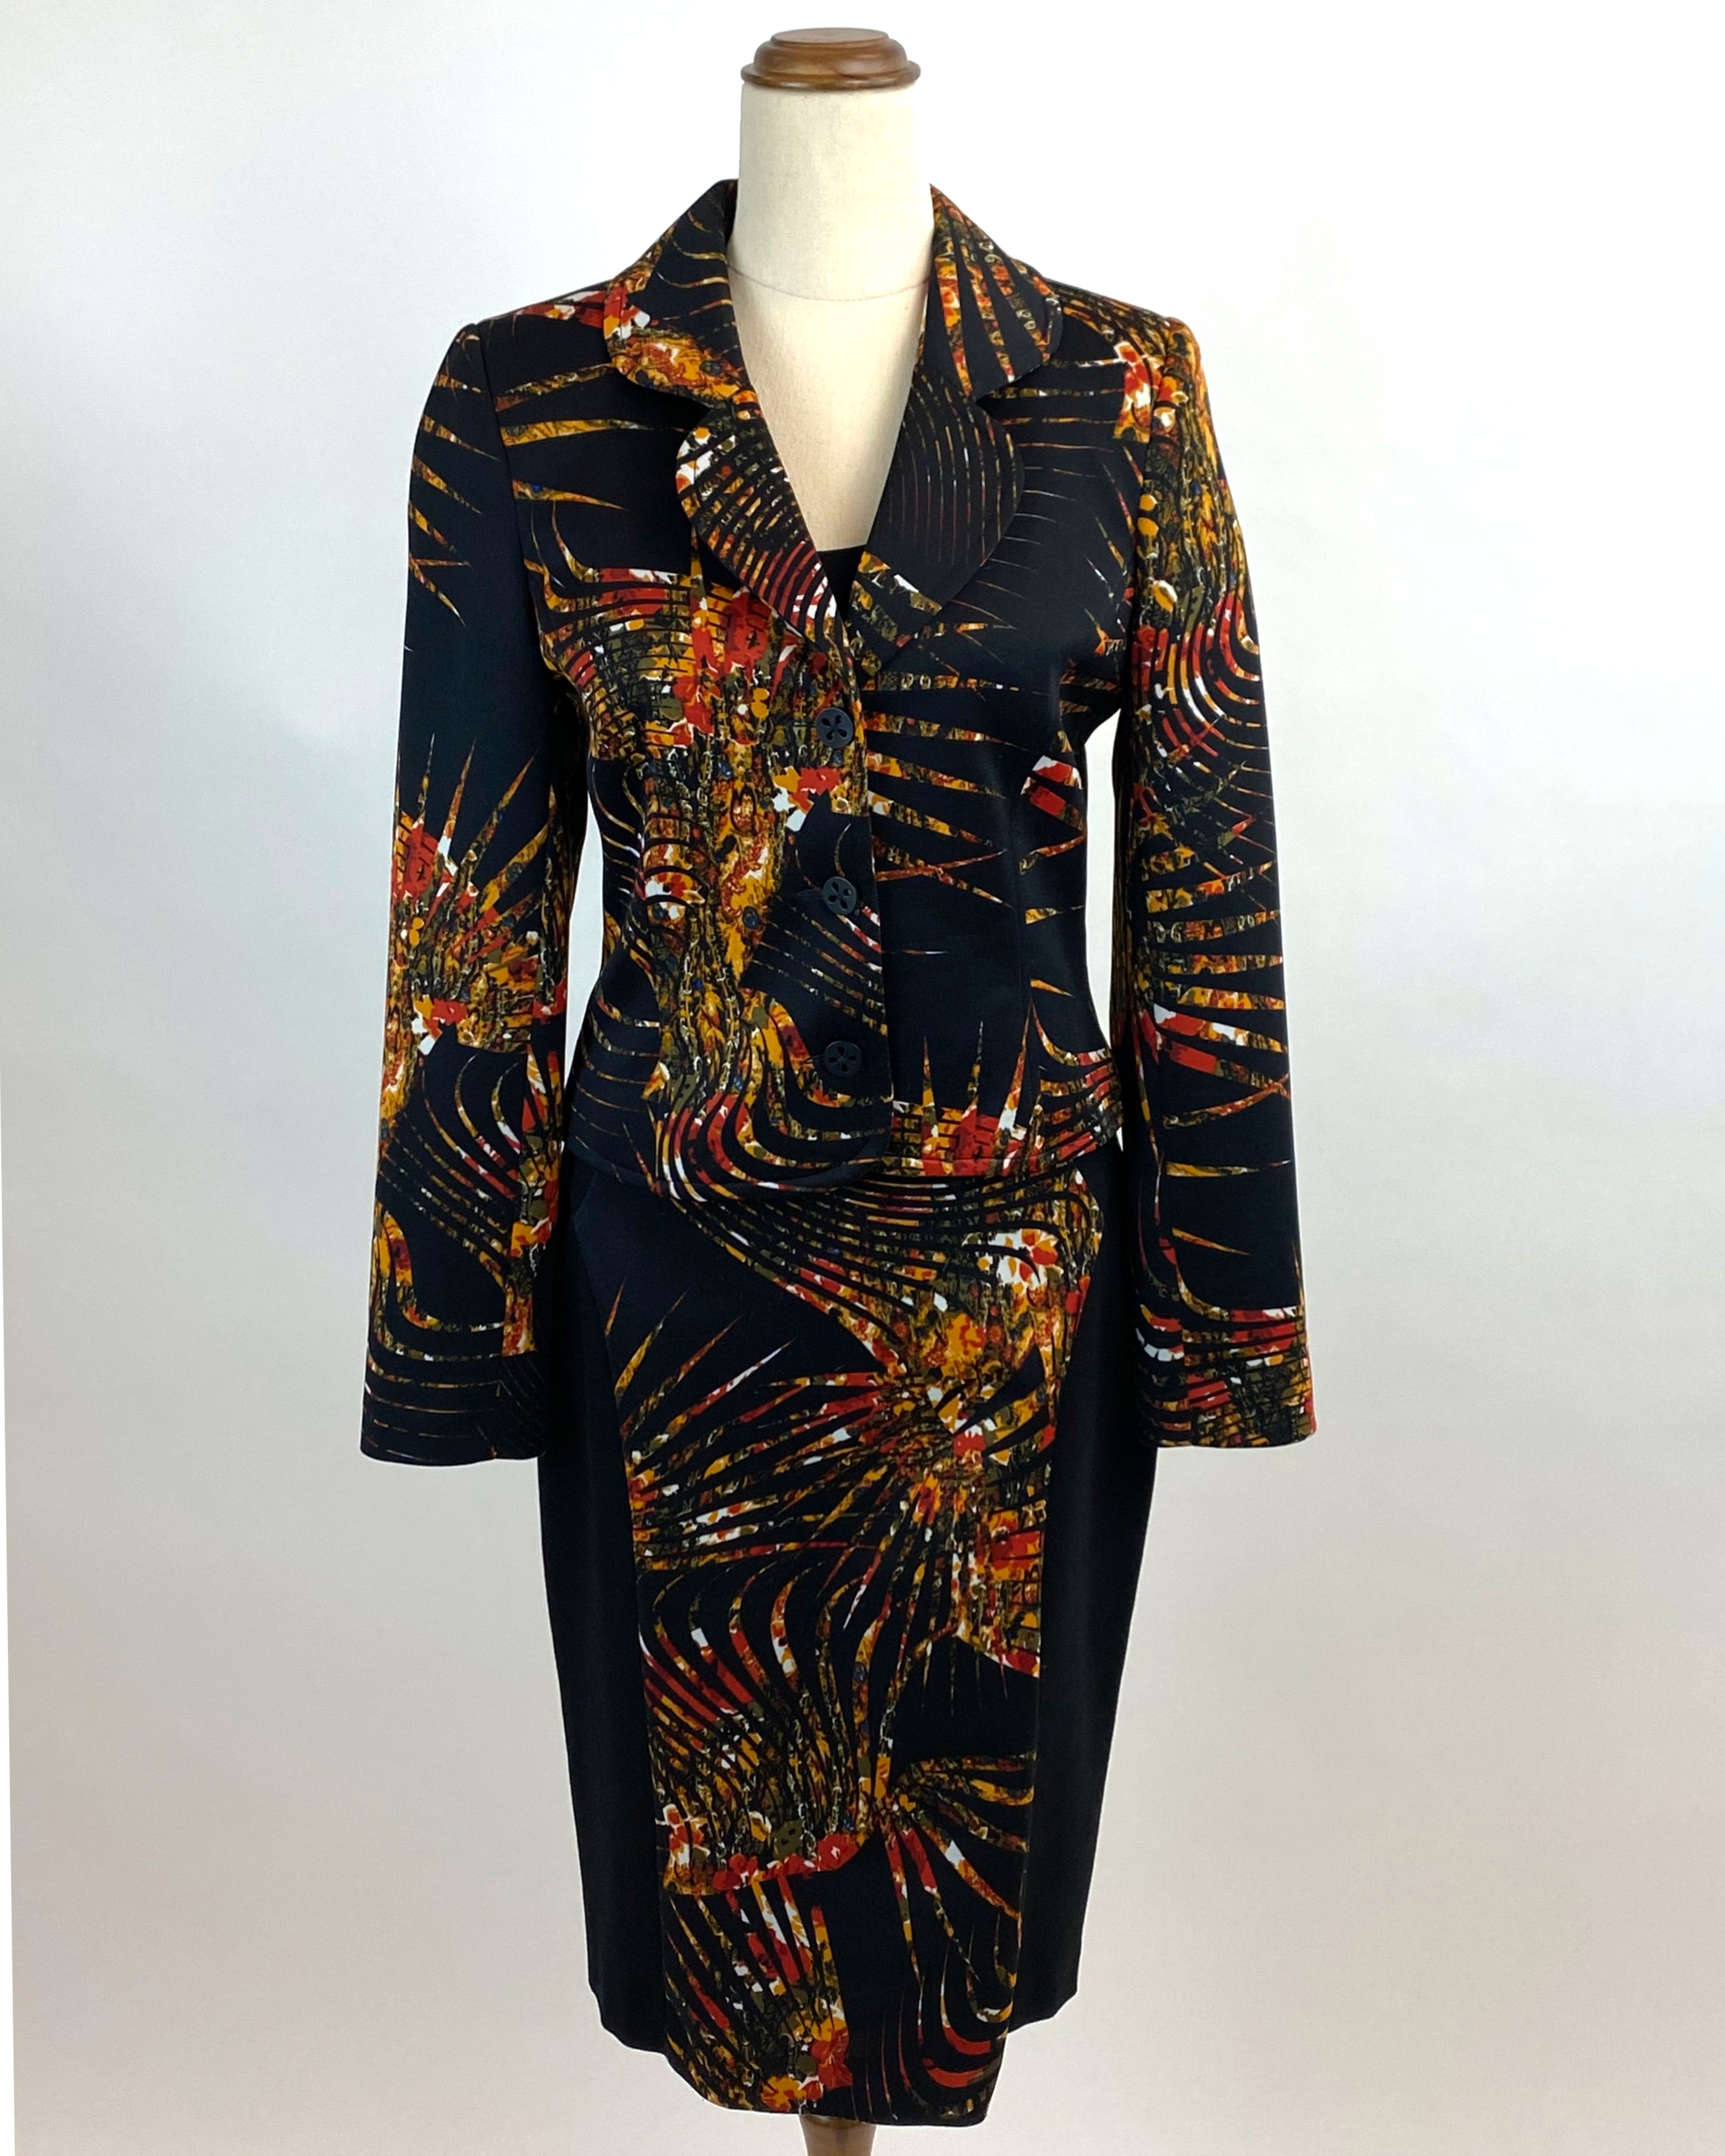 Lisa Barron jacket & dress